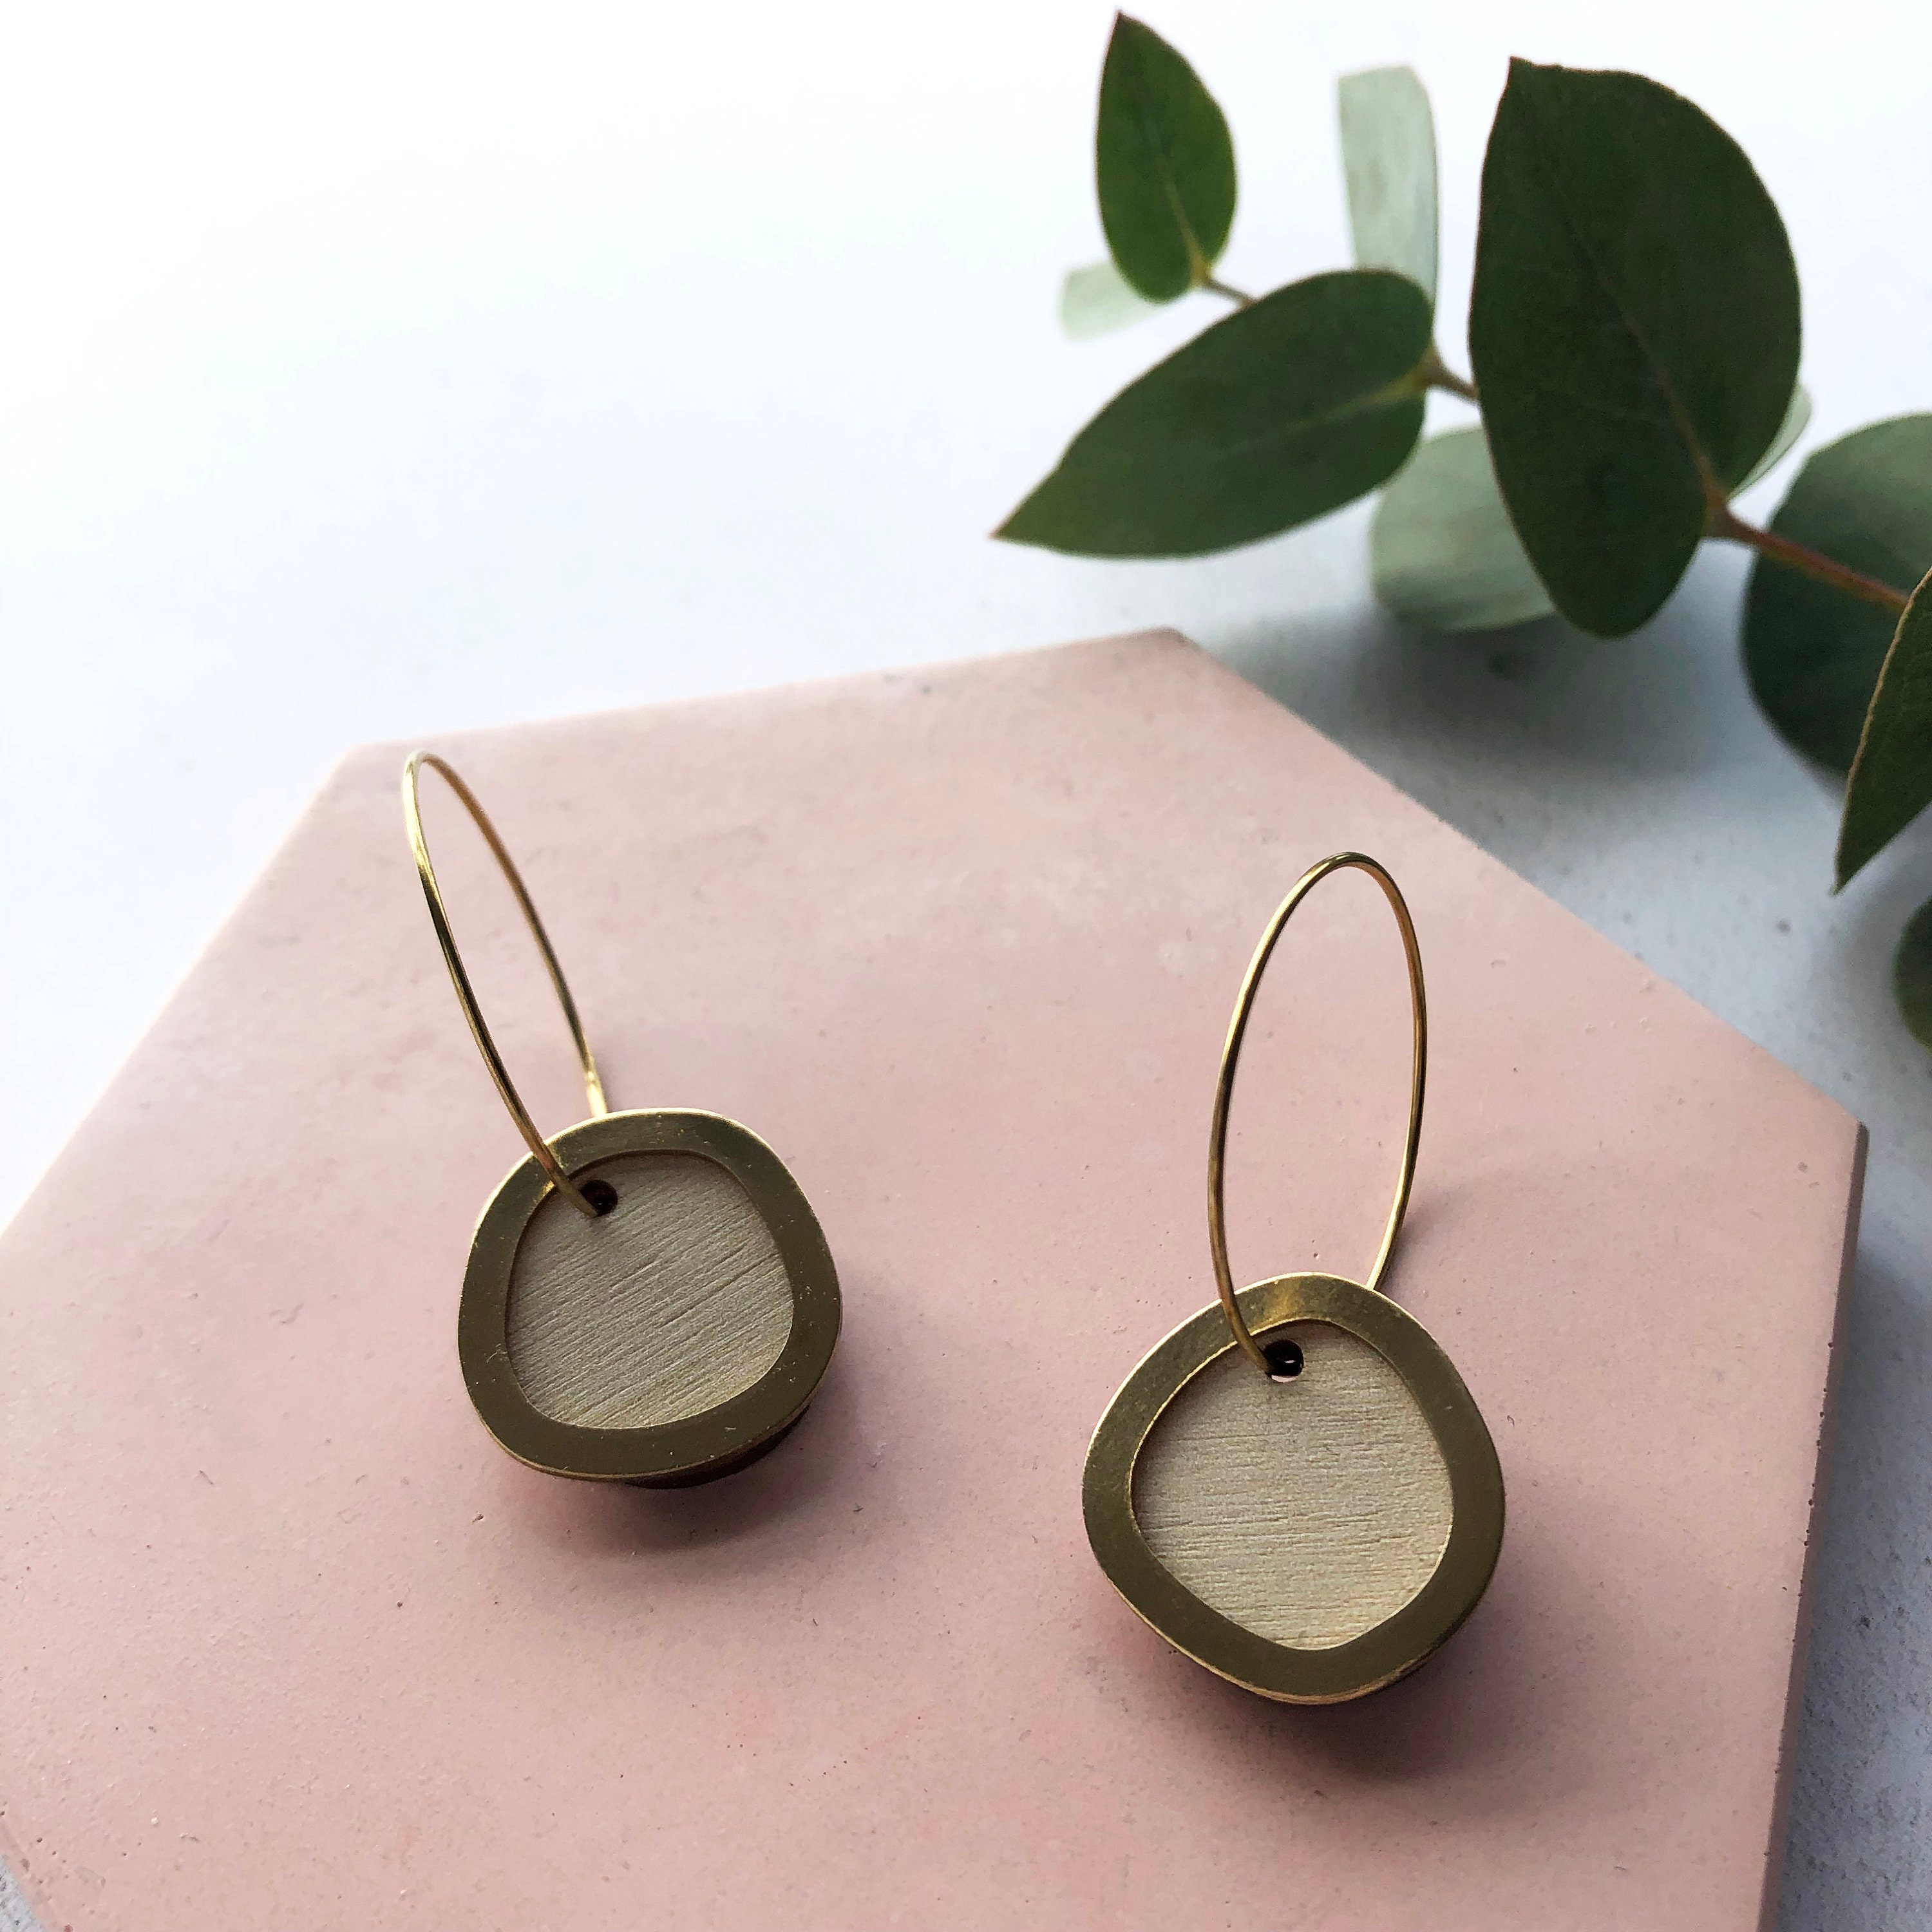 Modern Cream/Natural Circle Hoop Earrings - Minimal Gift For Her Geometric Hoops Simple